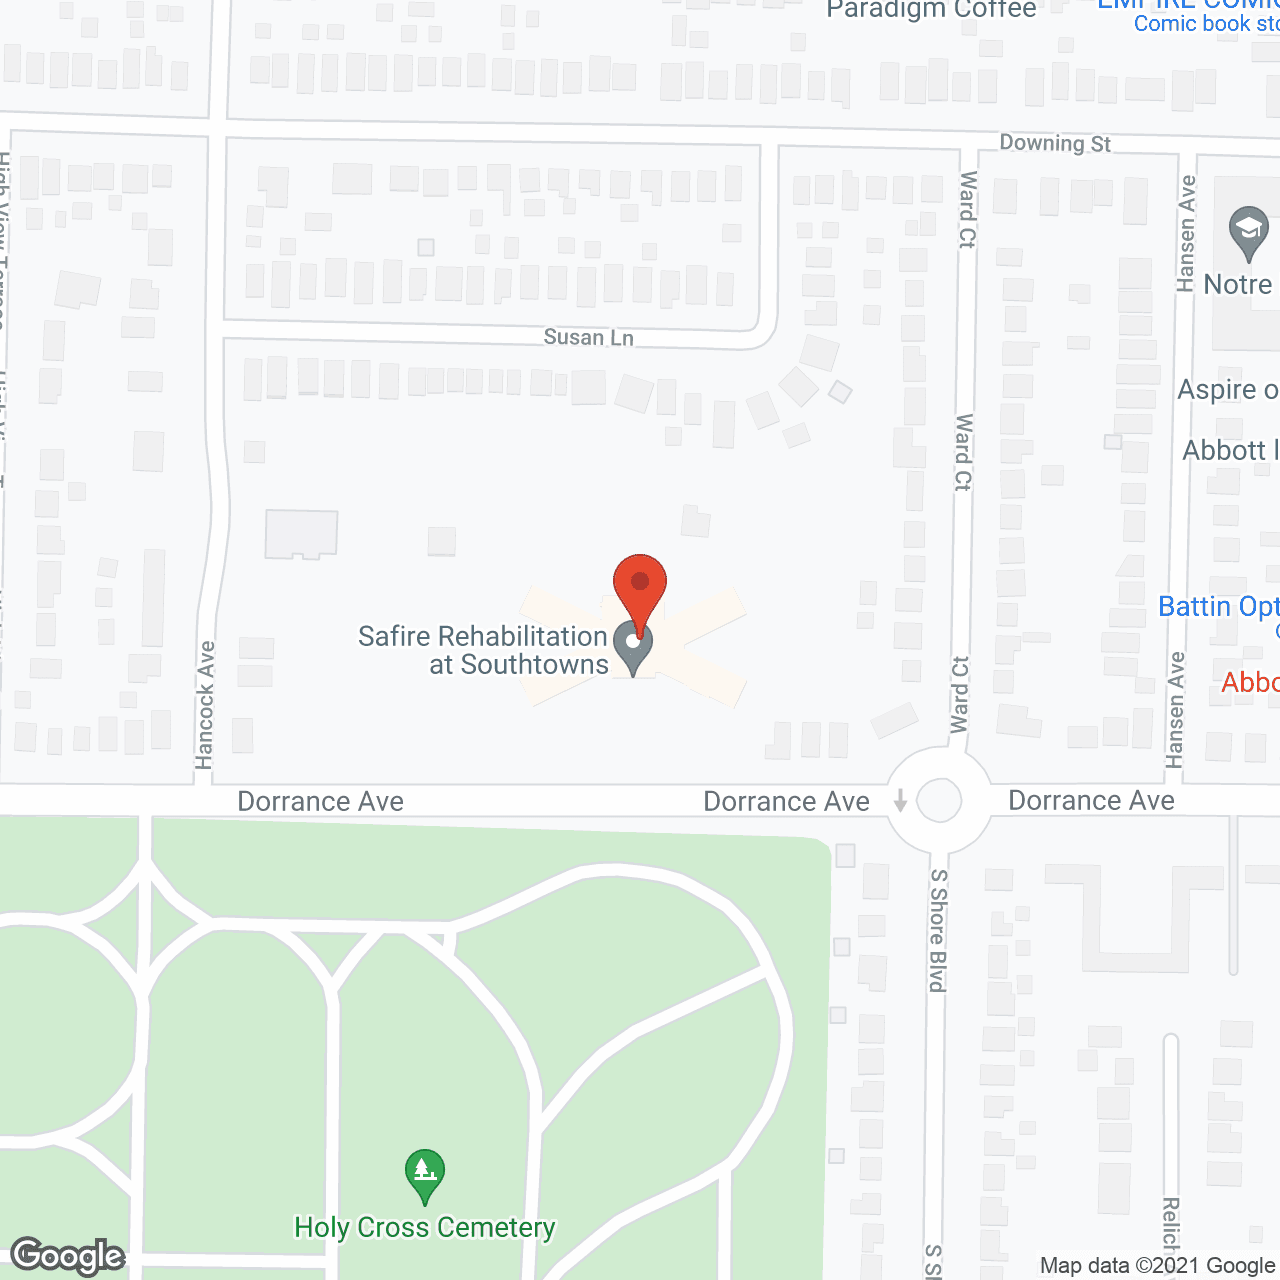 Ridge View Manor Nursing Home in google map